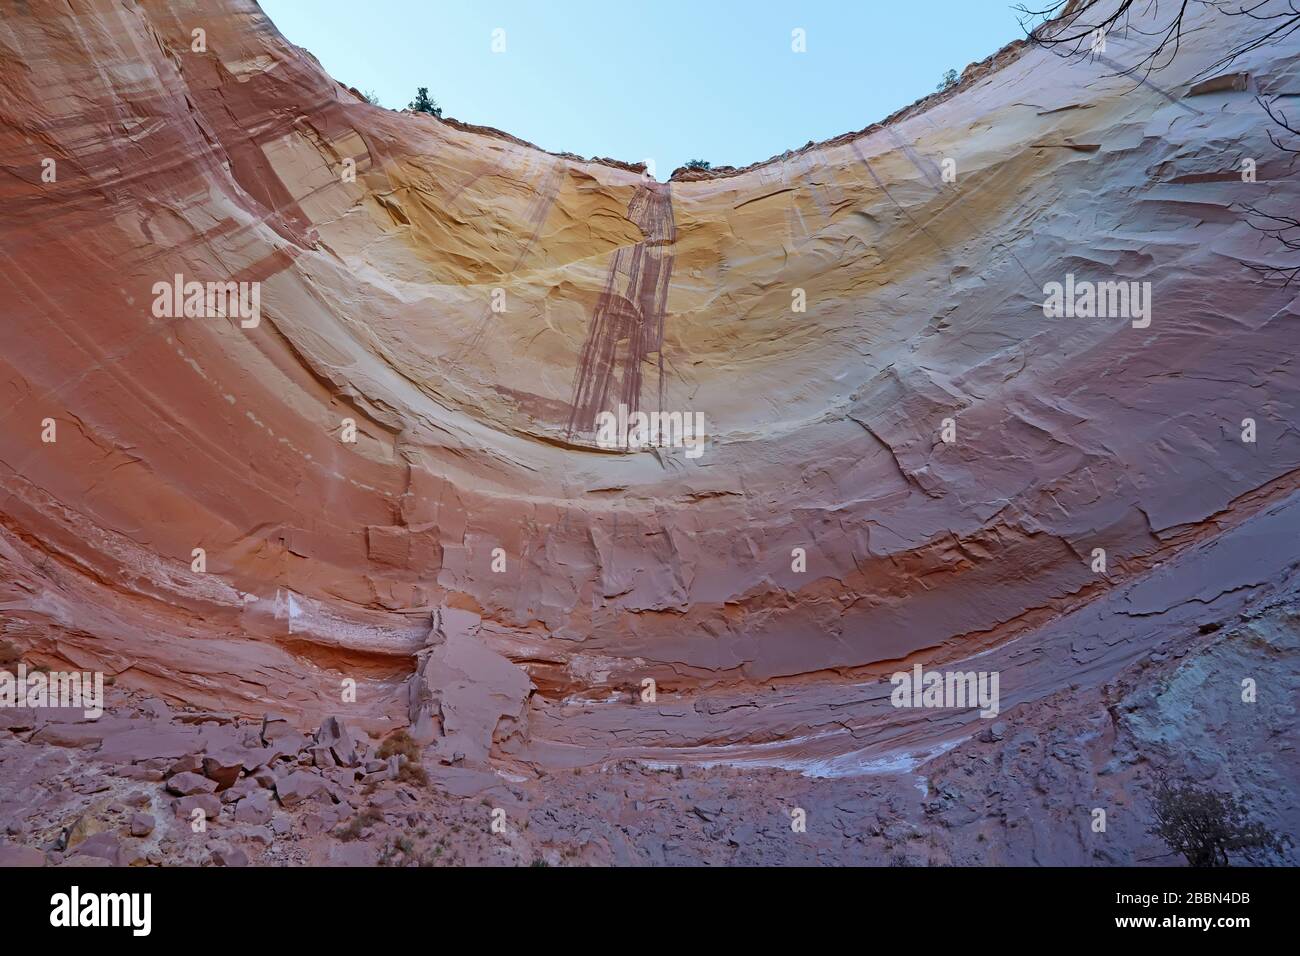 Labio de las formaciones rocosas erosionadas de arenisca que forman el Anfiteatro Echo en el Bosque Nacional Carson, cerca del pueblo de Abiquiu, Nuevo México Foto de stock